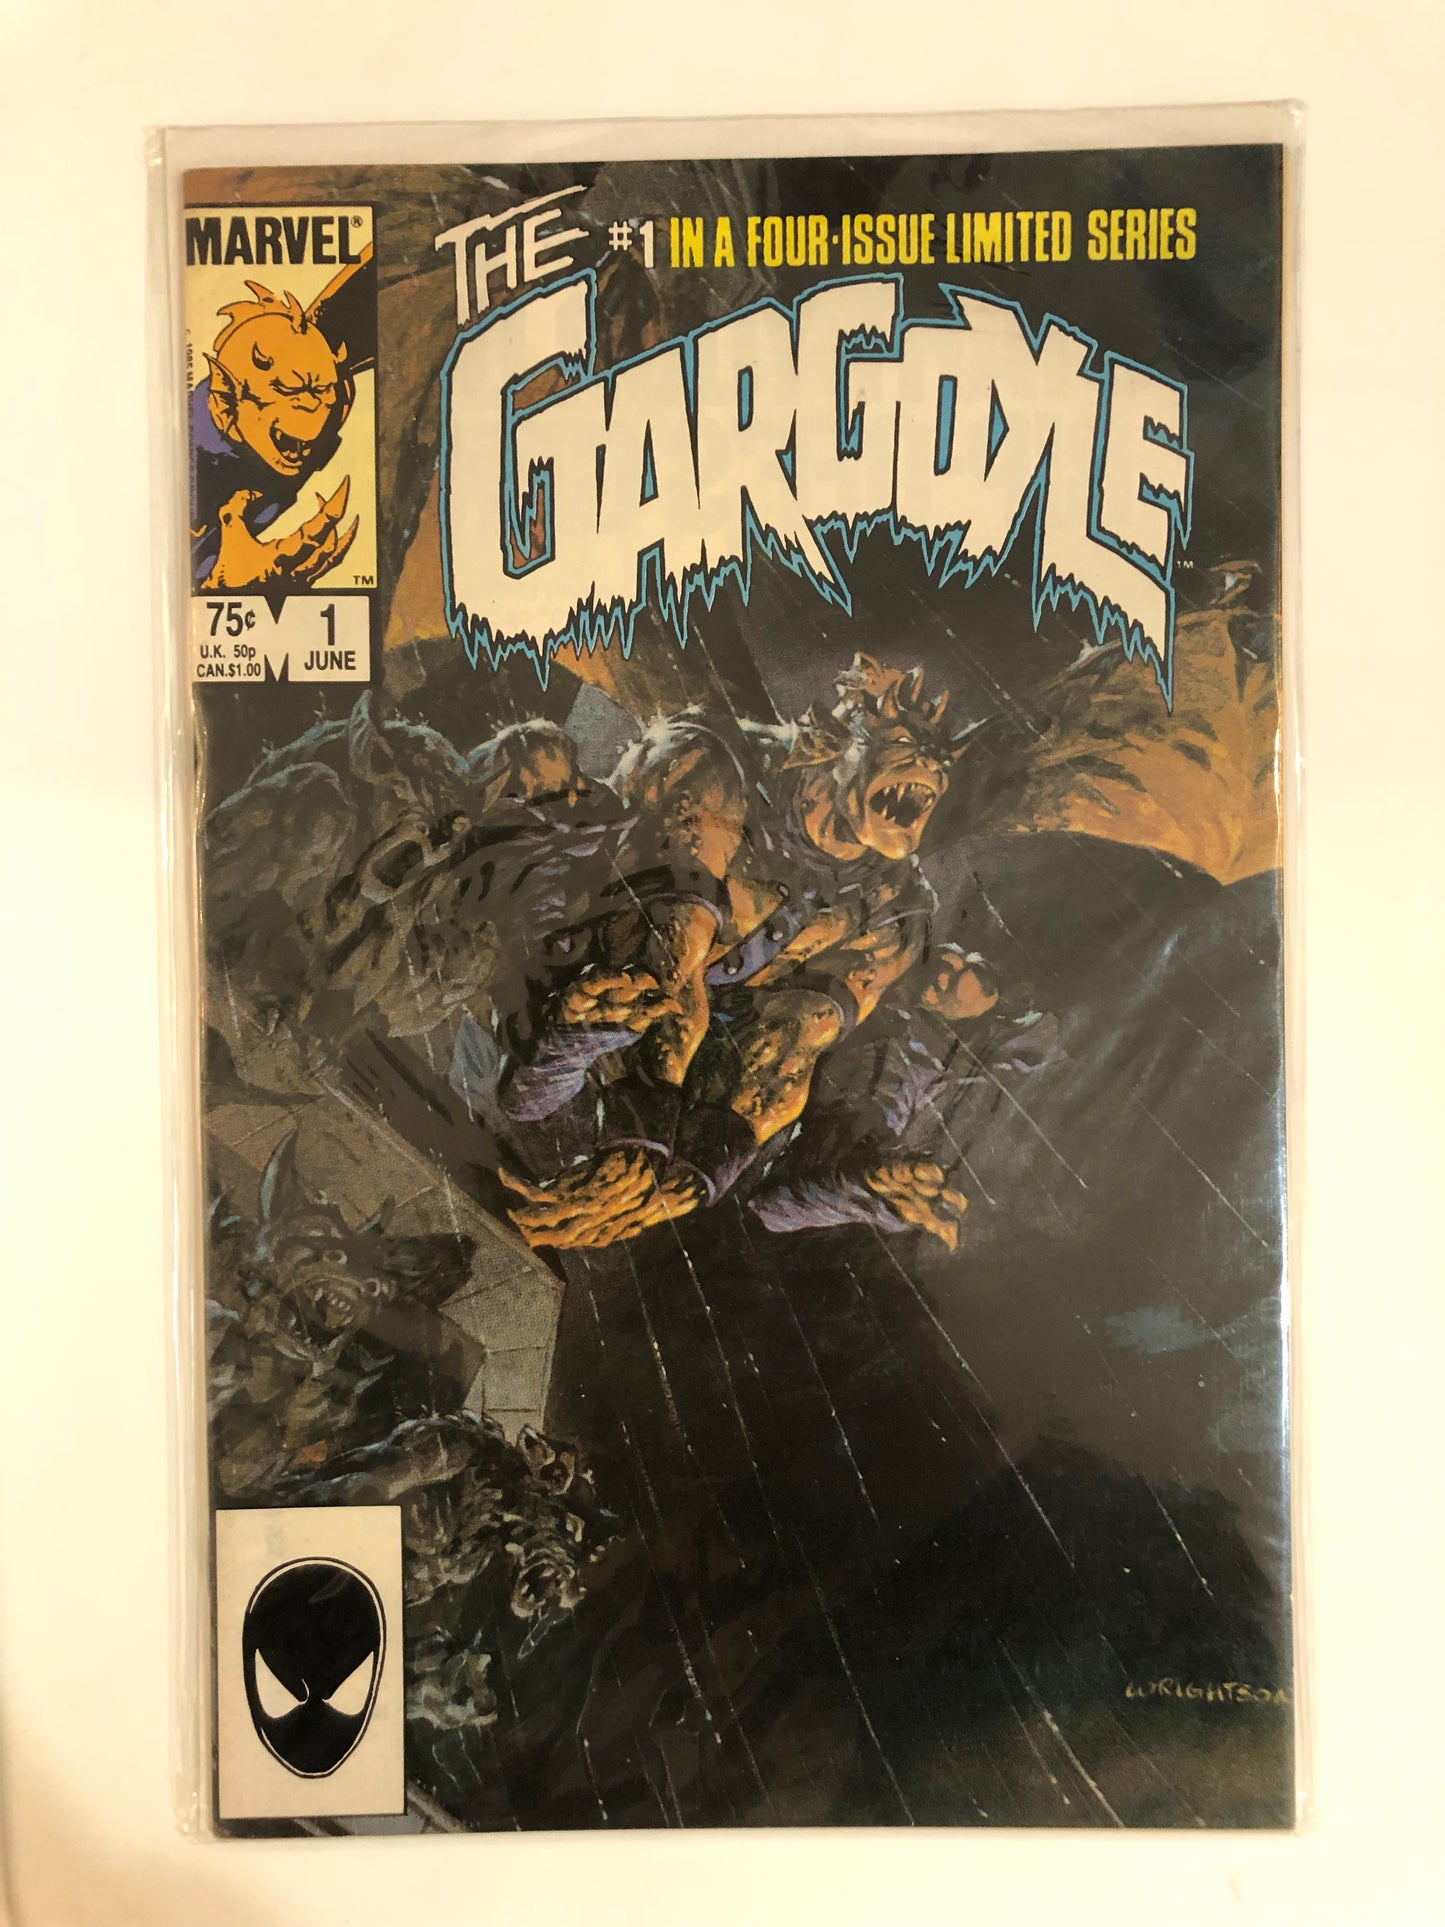 The Gargoyle #1-4